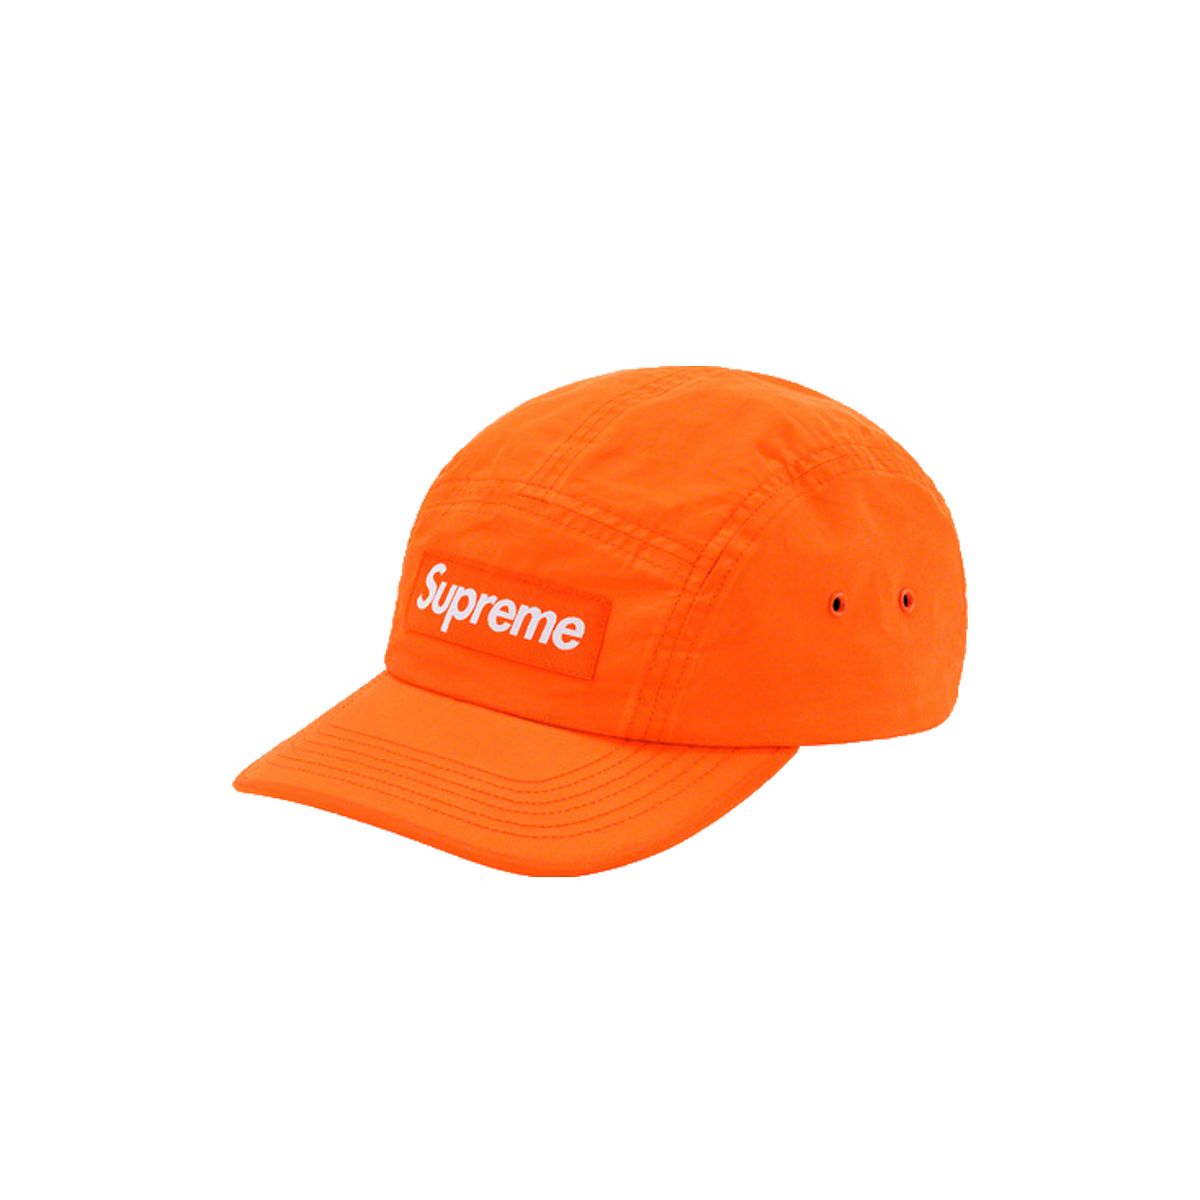 Supreme x Barbour Waxed Cotton Camp Cap Orange (SS20) | SS20 - KLEKT